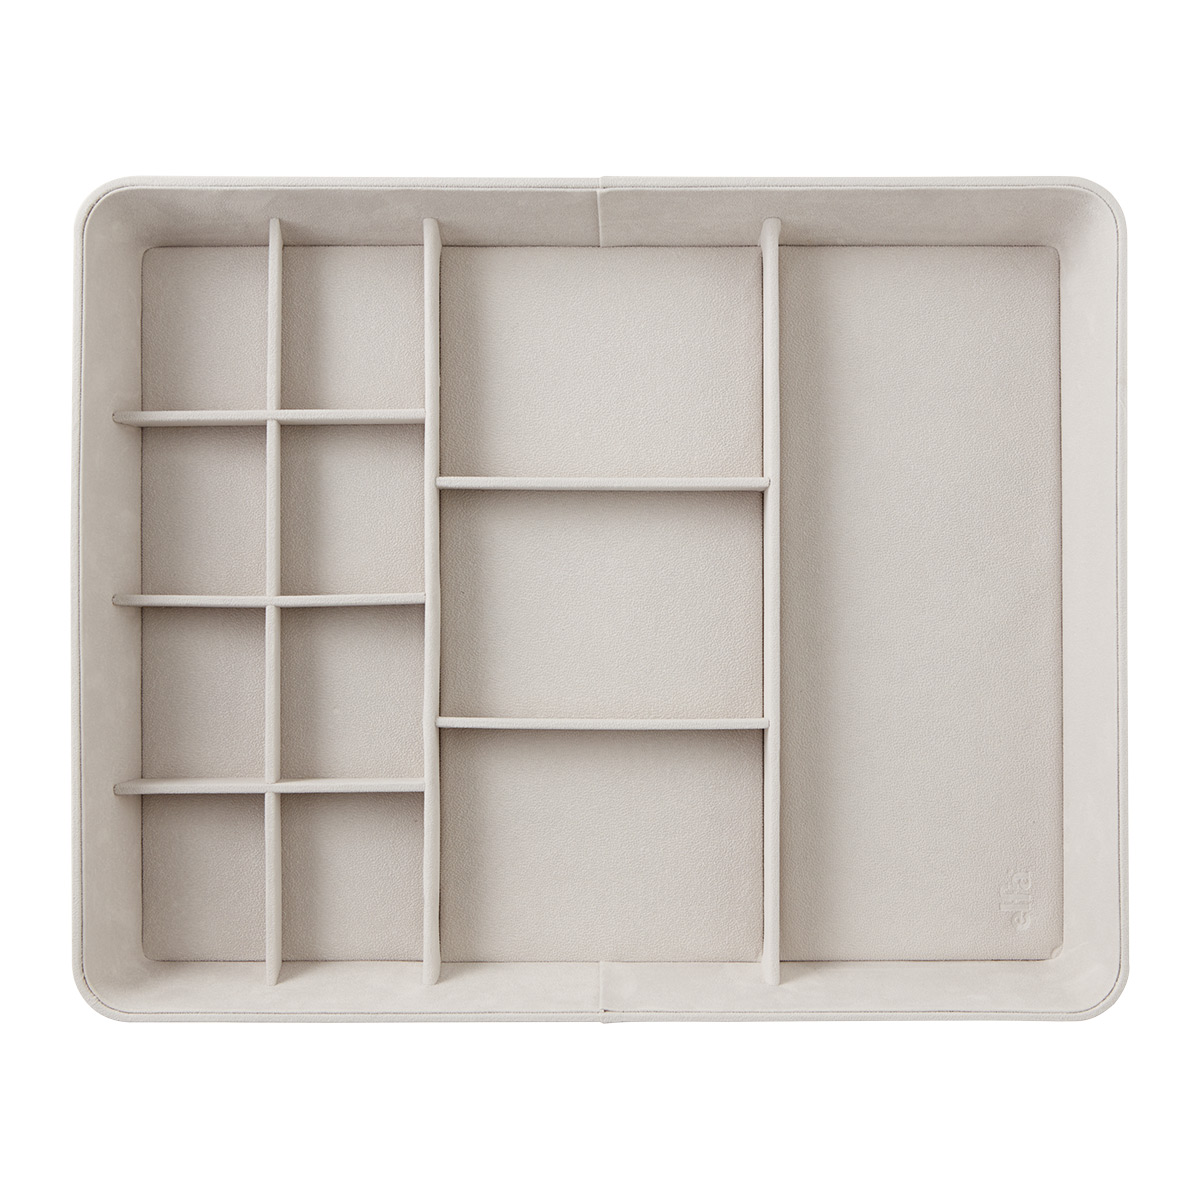 28 x 14 Grey Drawer Organization Starter Kit